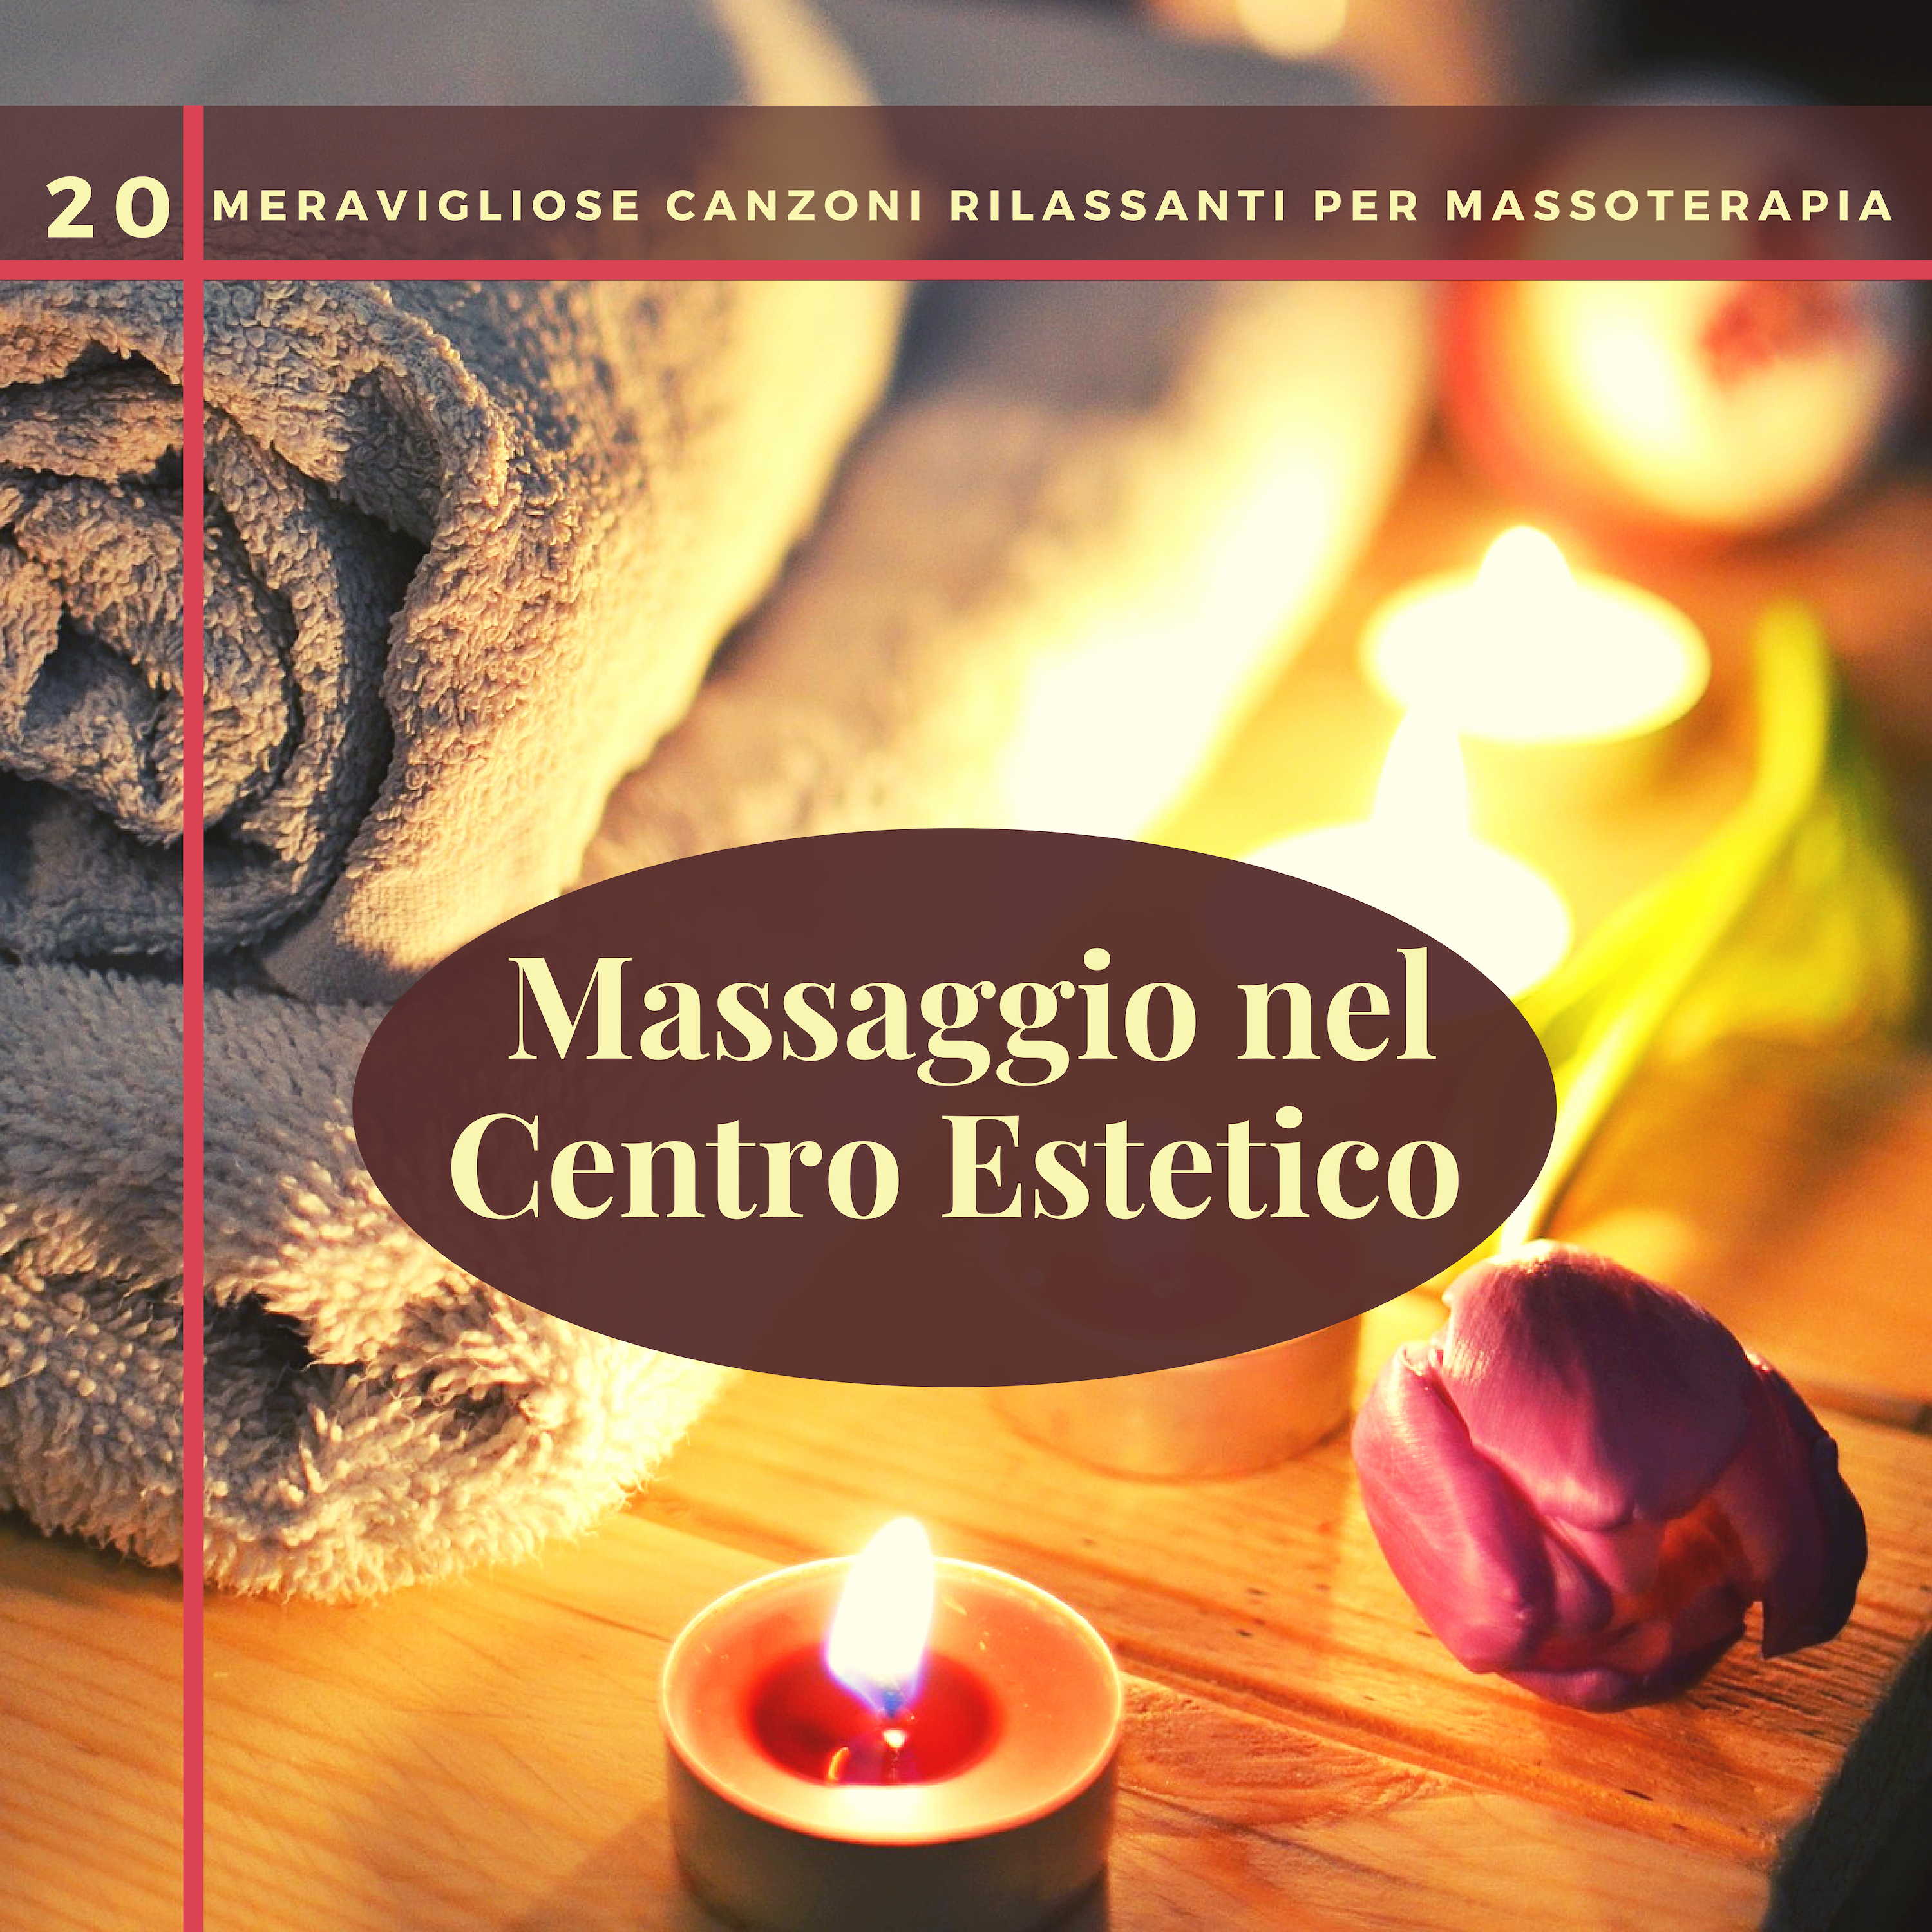 Massaggio nel Centro Estetico - 20 Meravigliose Canzoni Rilassanti per Massoterapia